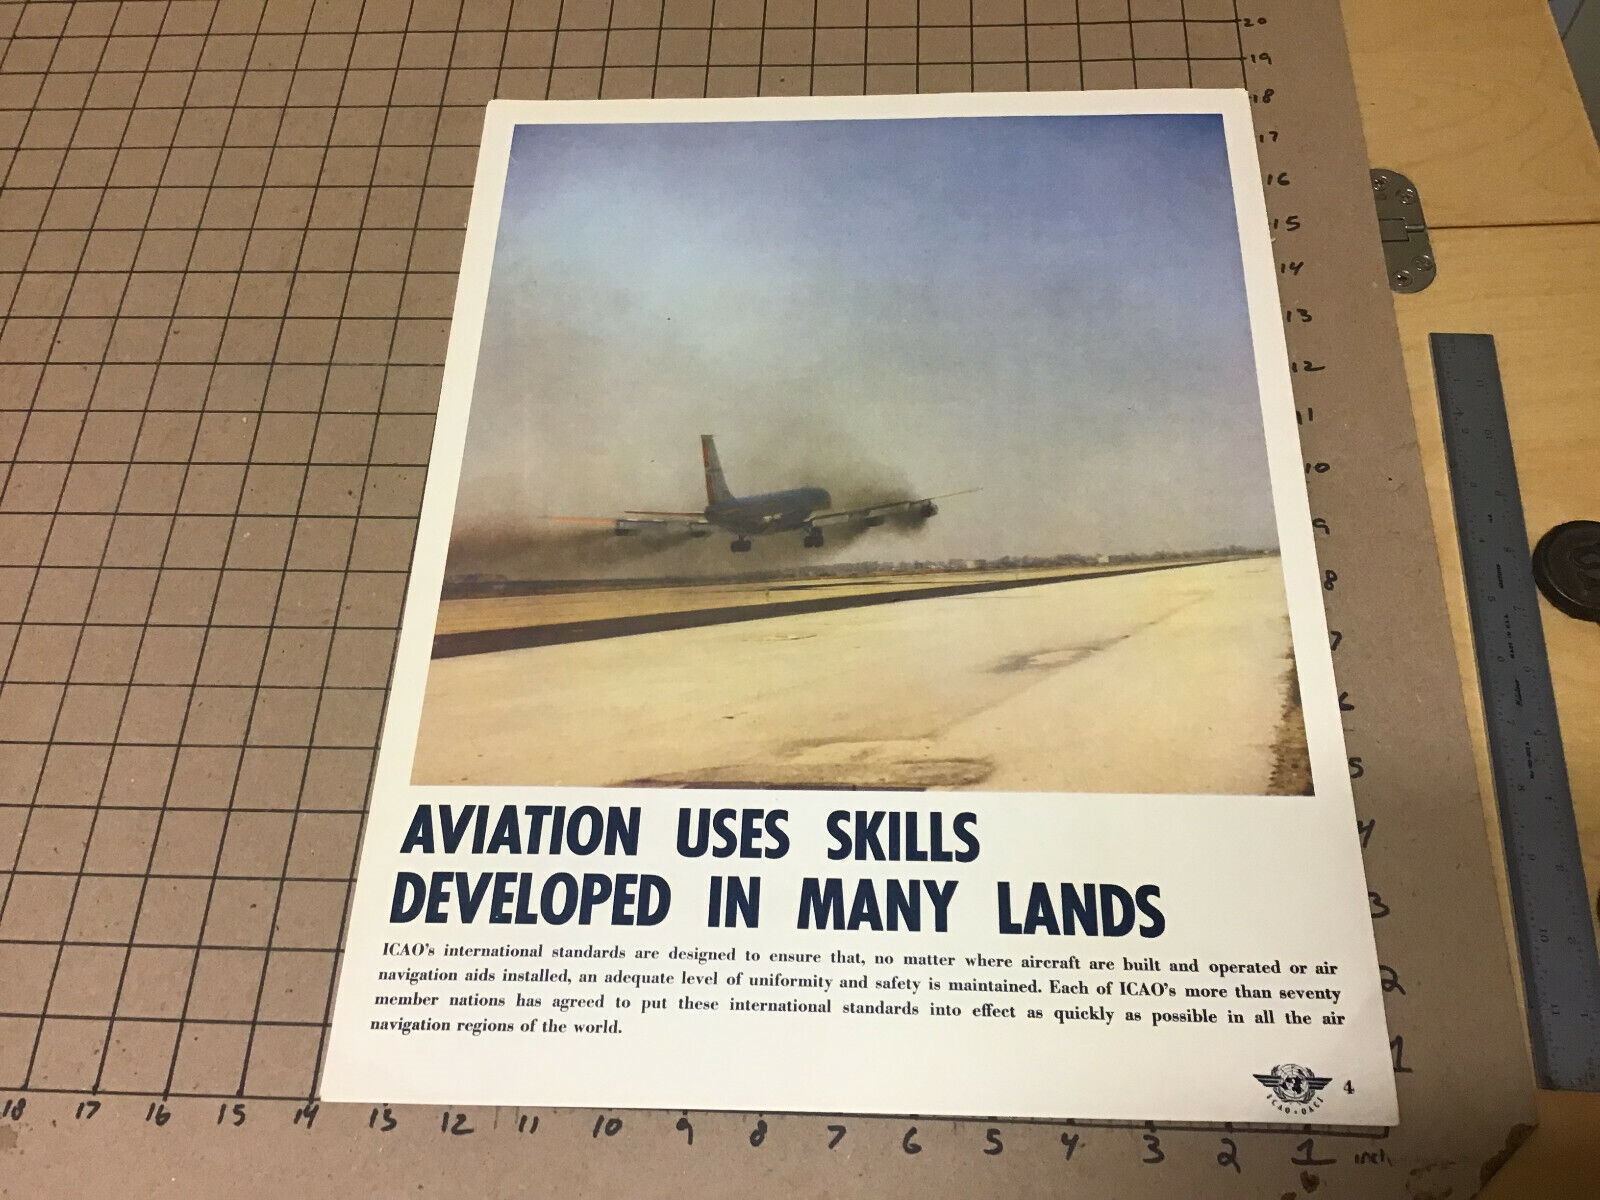 original 1956 international civil aviation organization Poster: Aviation skills